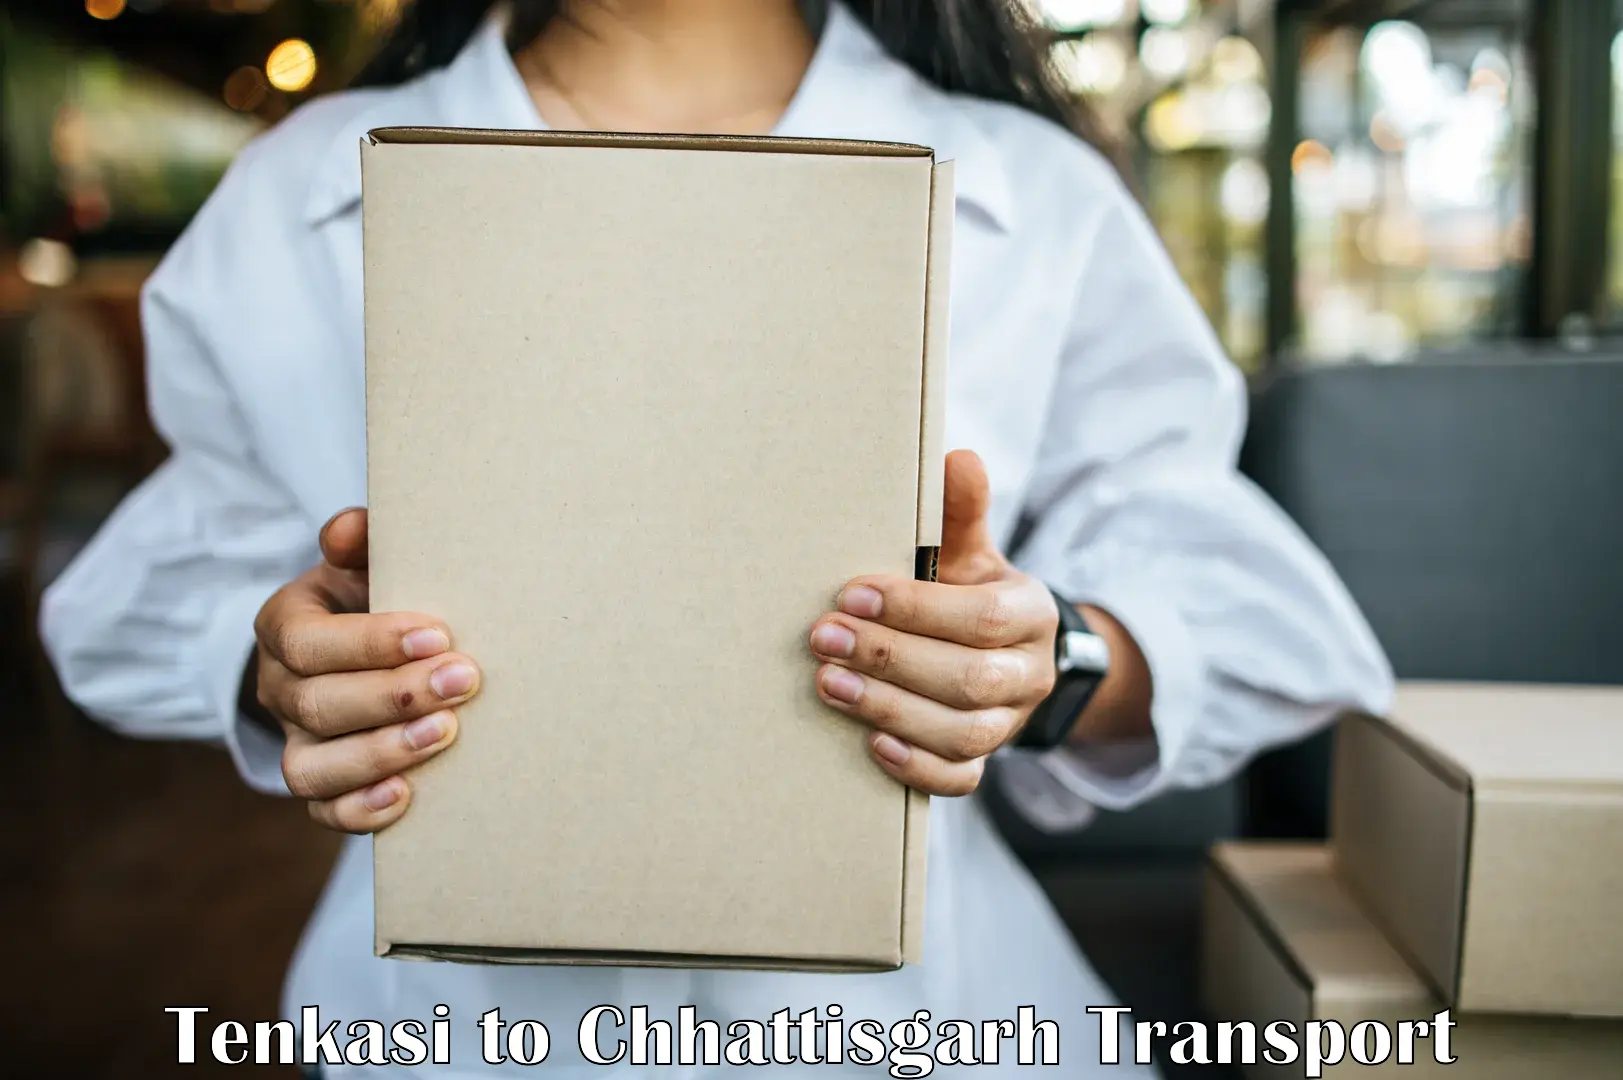 Nearest transport service Tenkasi to Korea Chhattisgarh